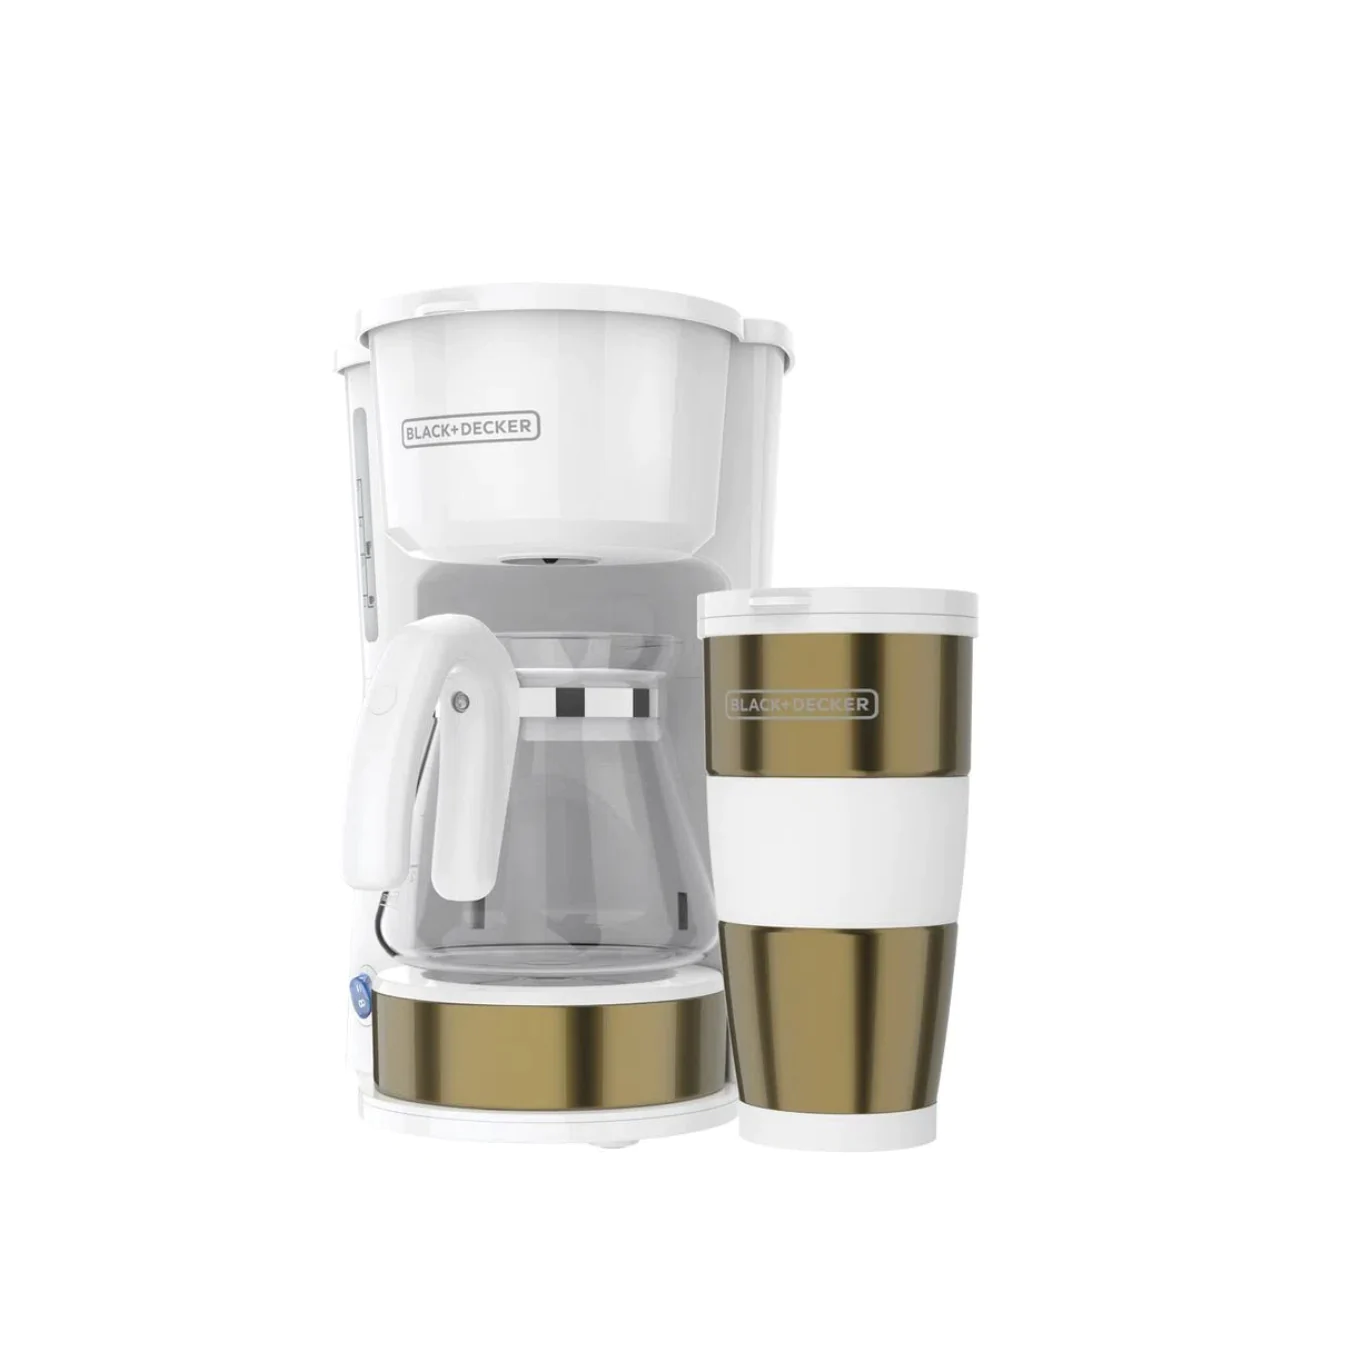 Coffee Maker de 4 tazas color blanco con dorado F-CM0755G Marca: Black + Decker